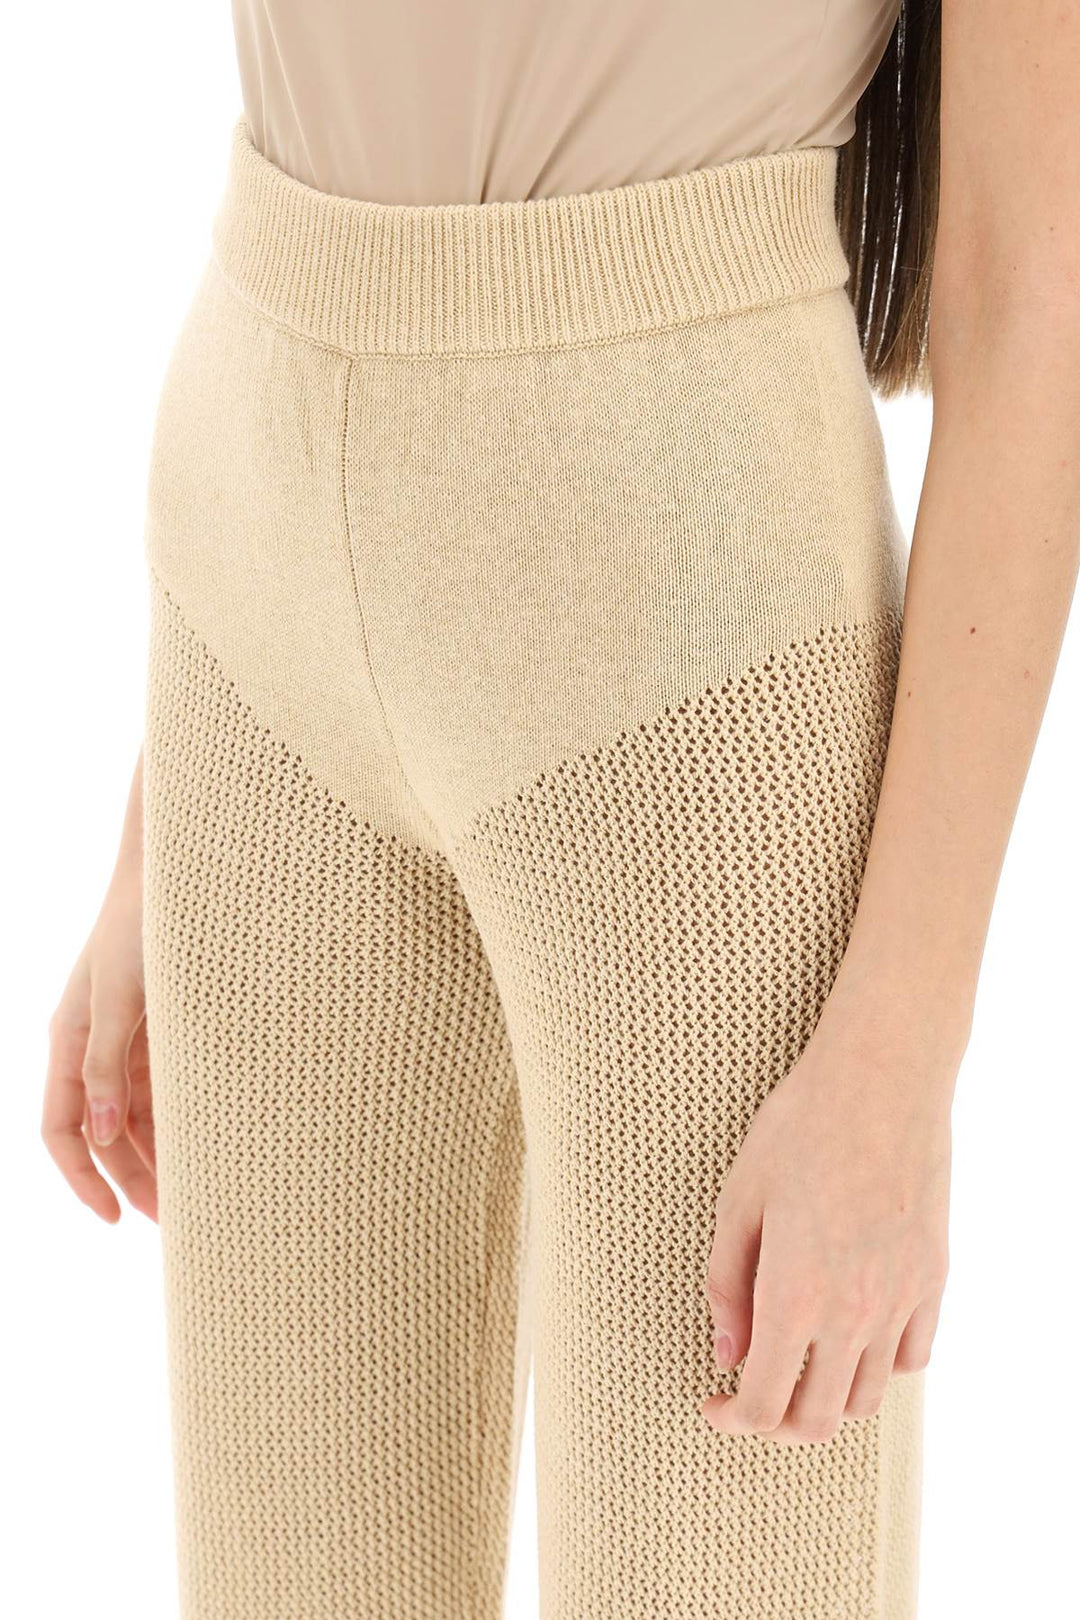 Pantaloni 'Cambria' In Maglia Traforata - Mvp Wardrobe - Donna